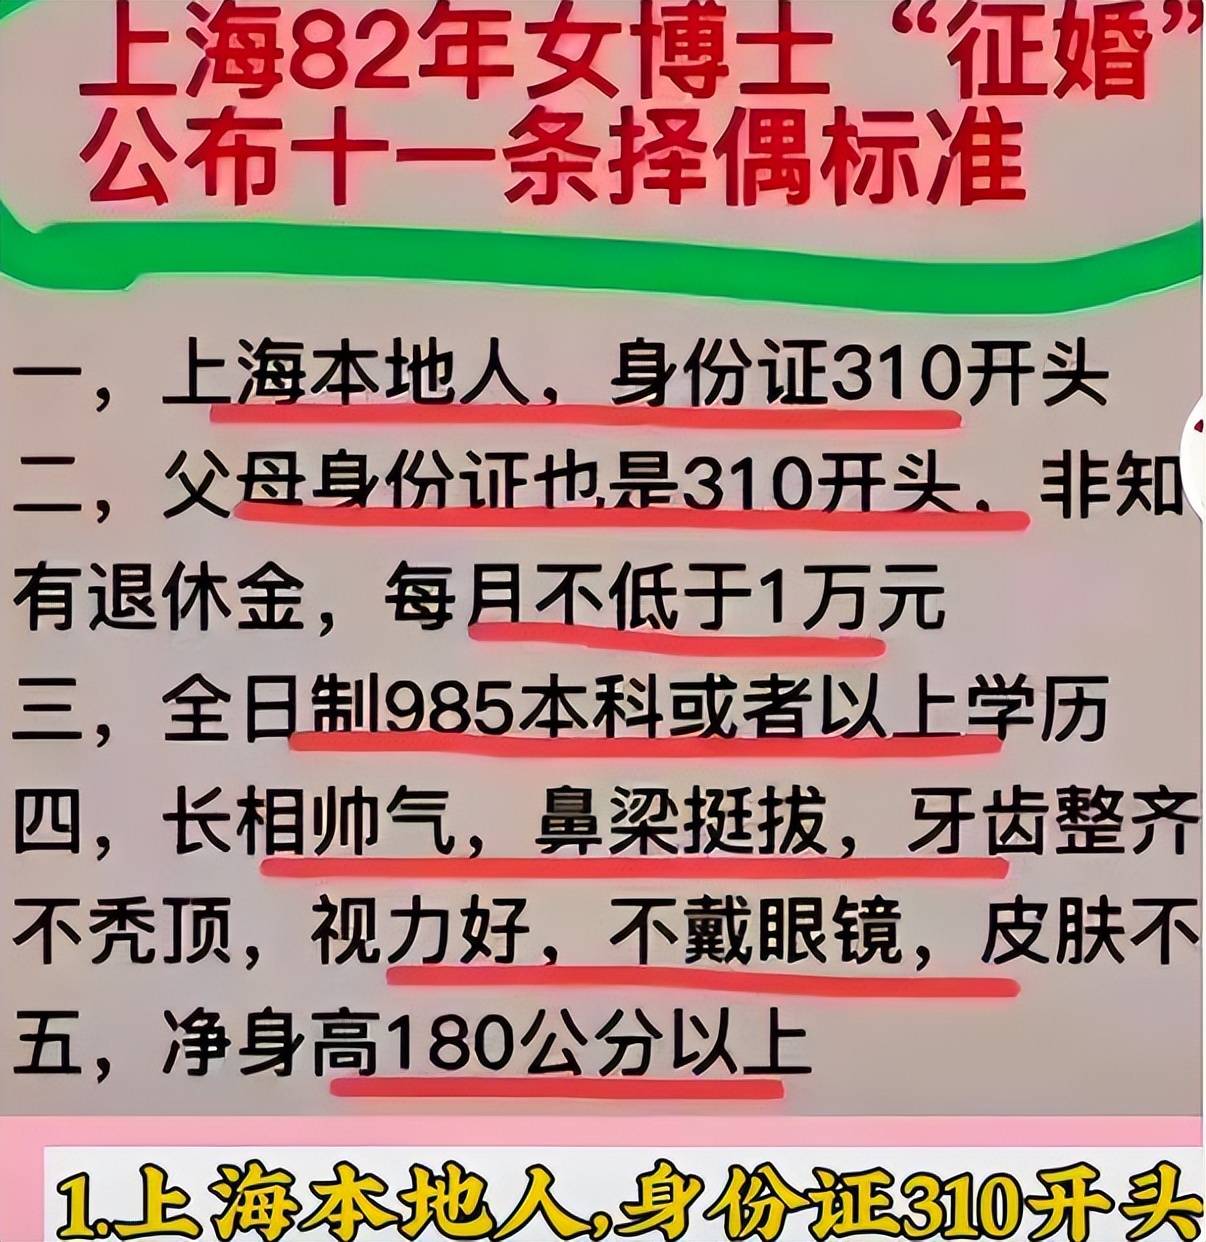 上海一女博士网上征婚，公布11条择偶标准，网友直言梦里啥都有